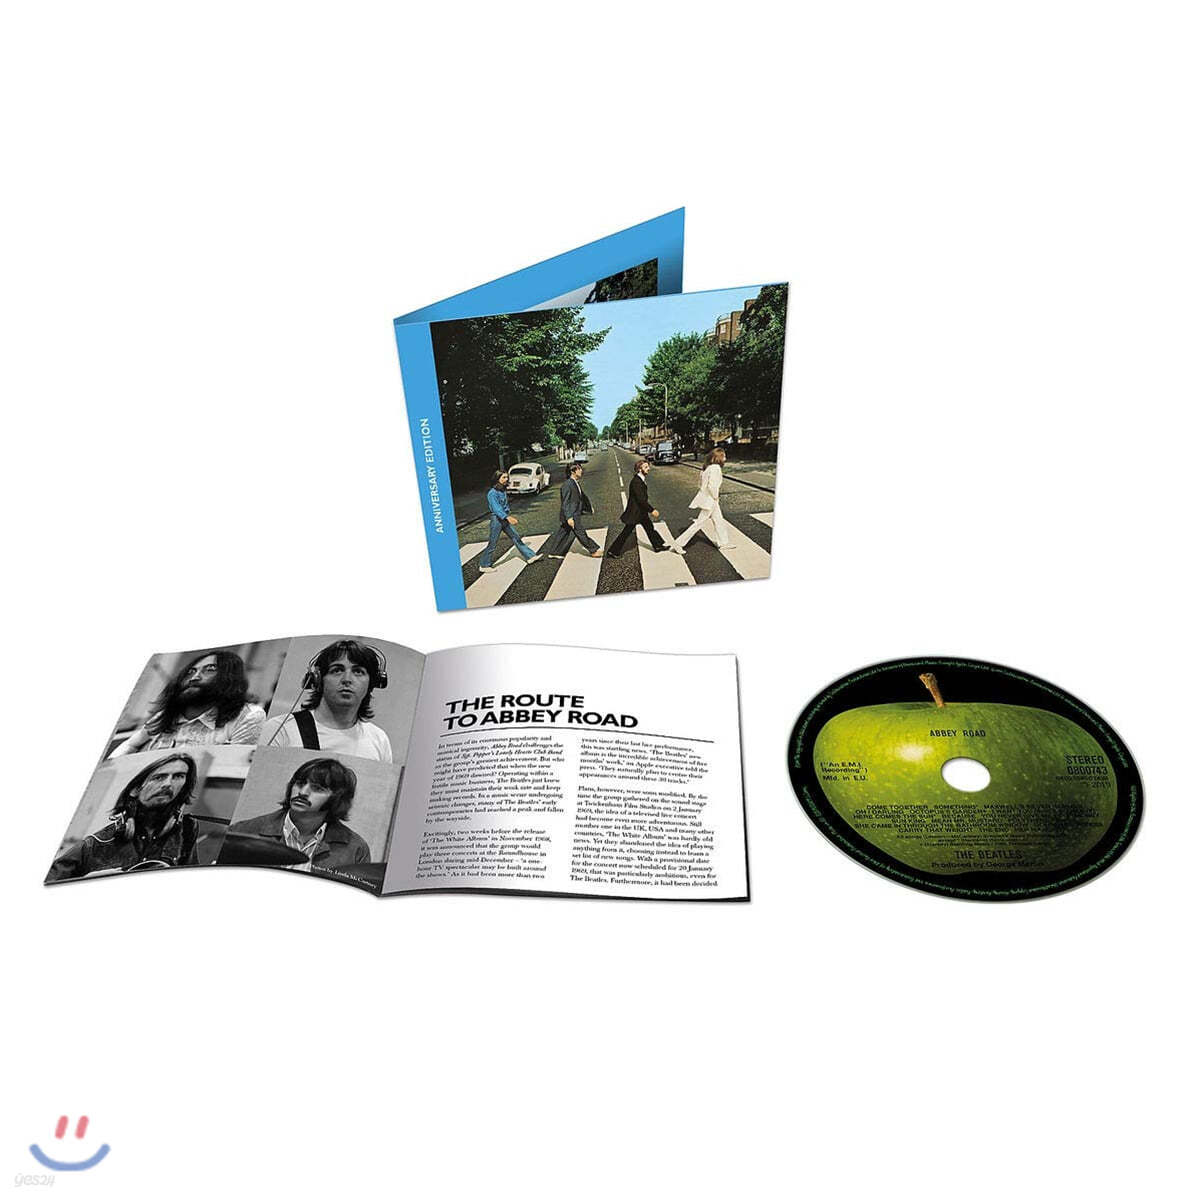 The Beatles - Abbey Road 50th Anniversary 비틀즈 애비로드 발매 50주년 기념 앨범